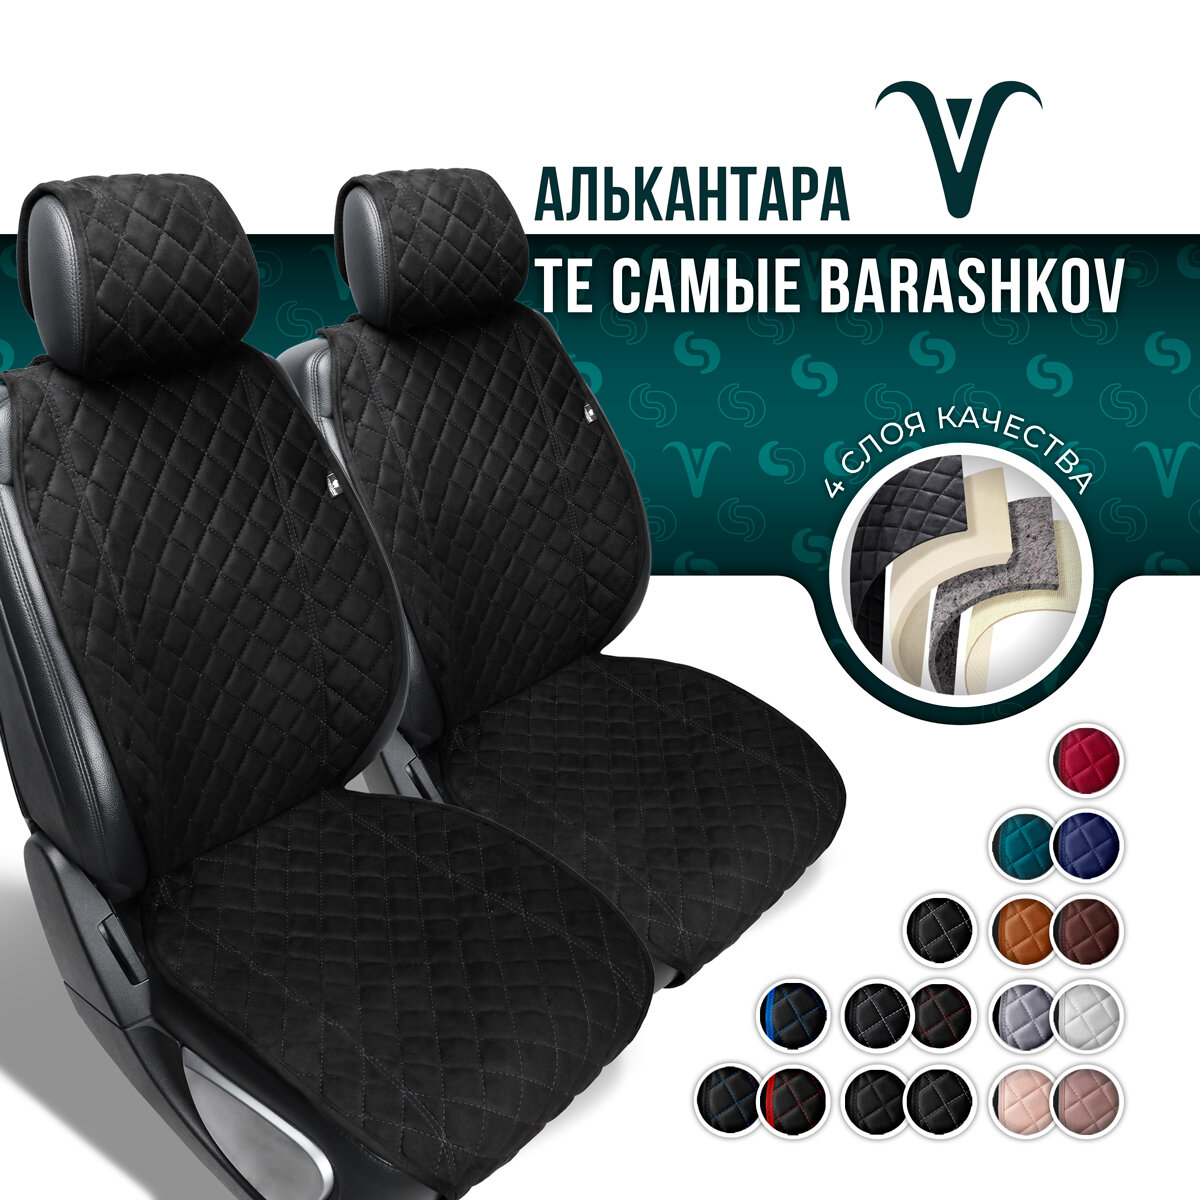 BARASHKOV/ Комплект накидок из алькантары на передние сиденья автомобиля "CLASSIC". Накидка чехол на сиденье 2 шт. Модель L. Черный, серая строчка